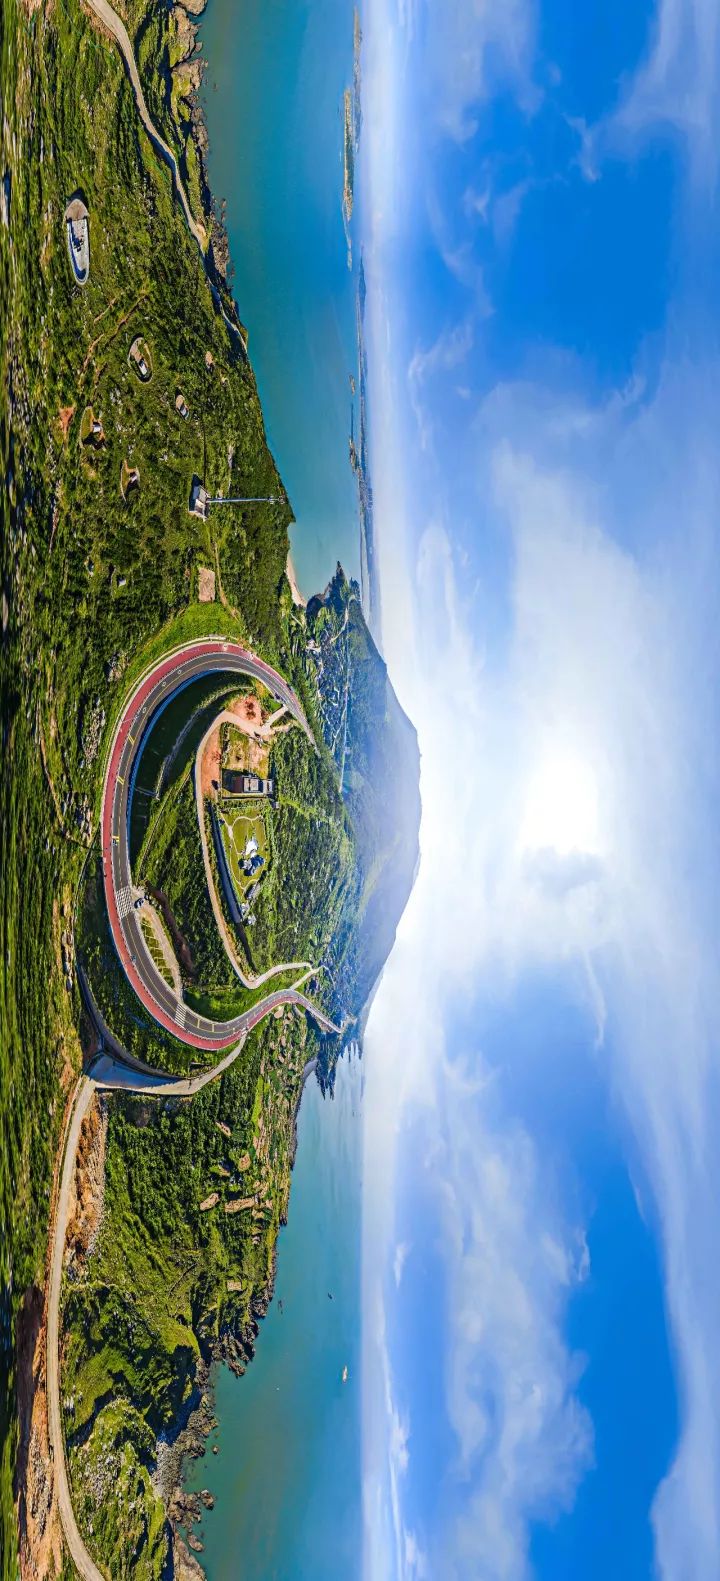 娱乐 正文  360°全景视角 环岛路 把全景应用于平潭的城市片